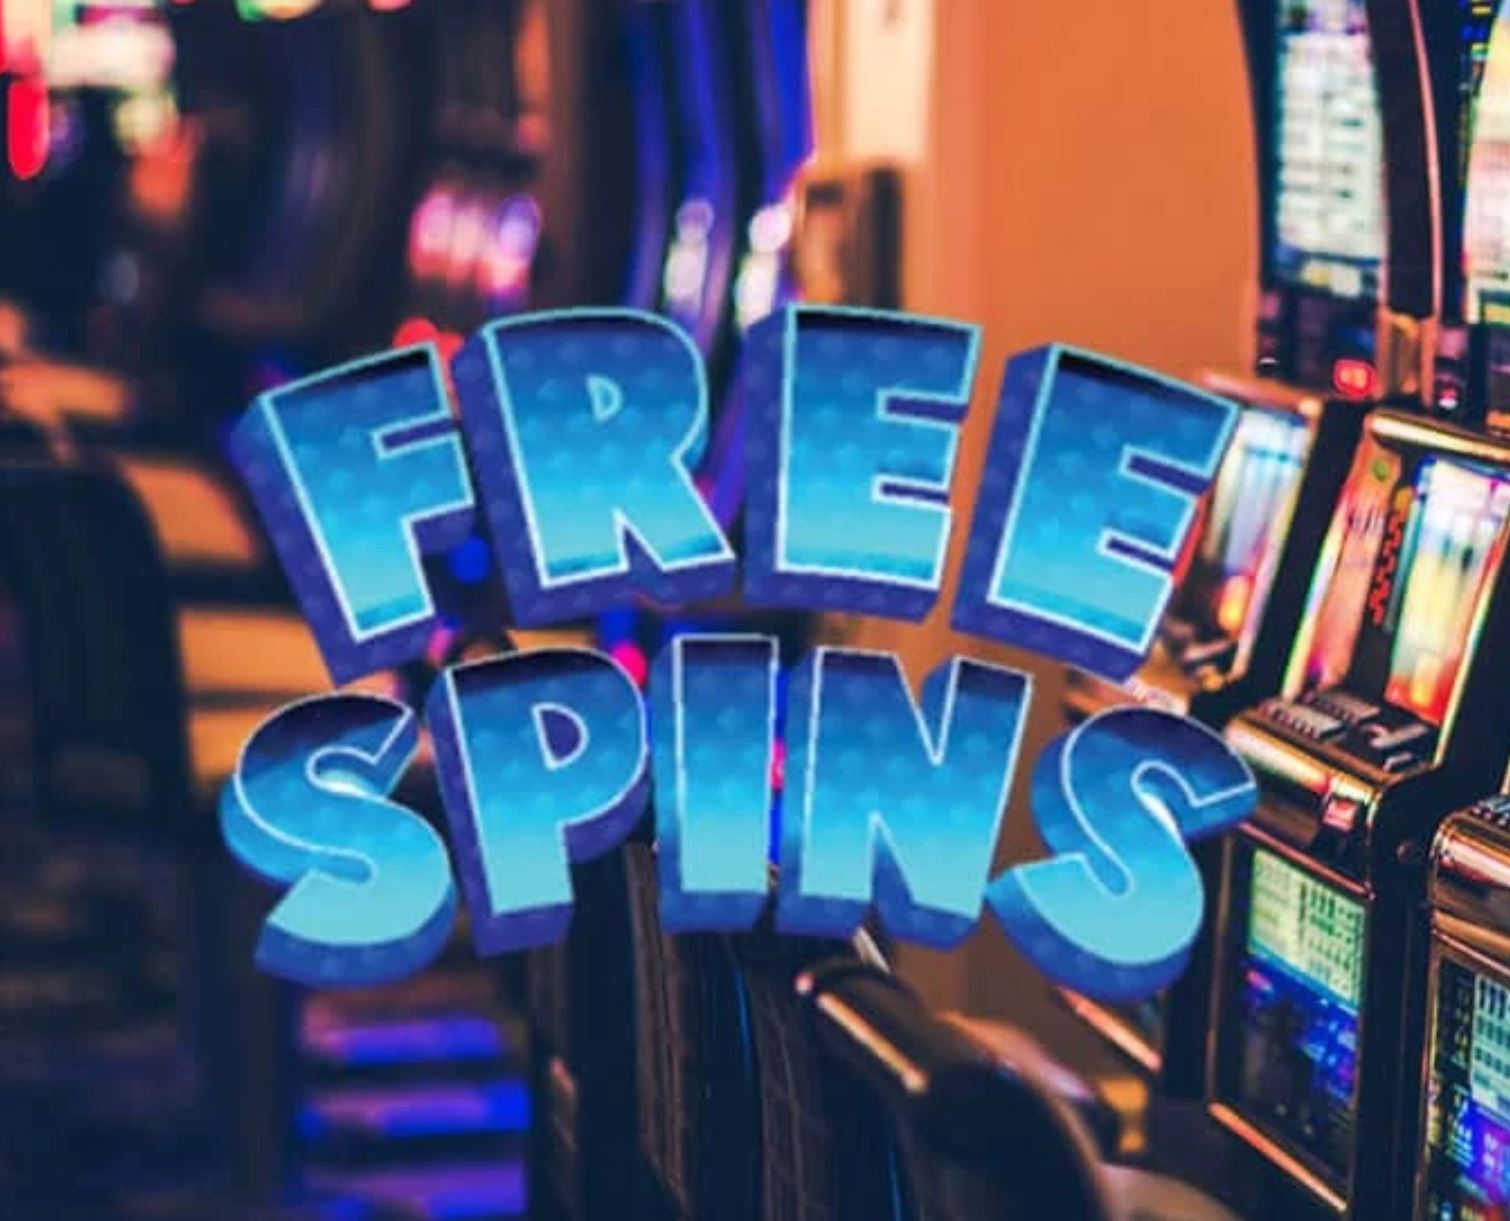 Free Spins - No Deposit Free Spins